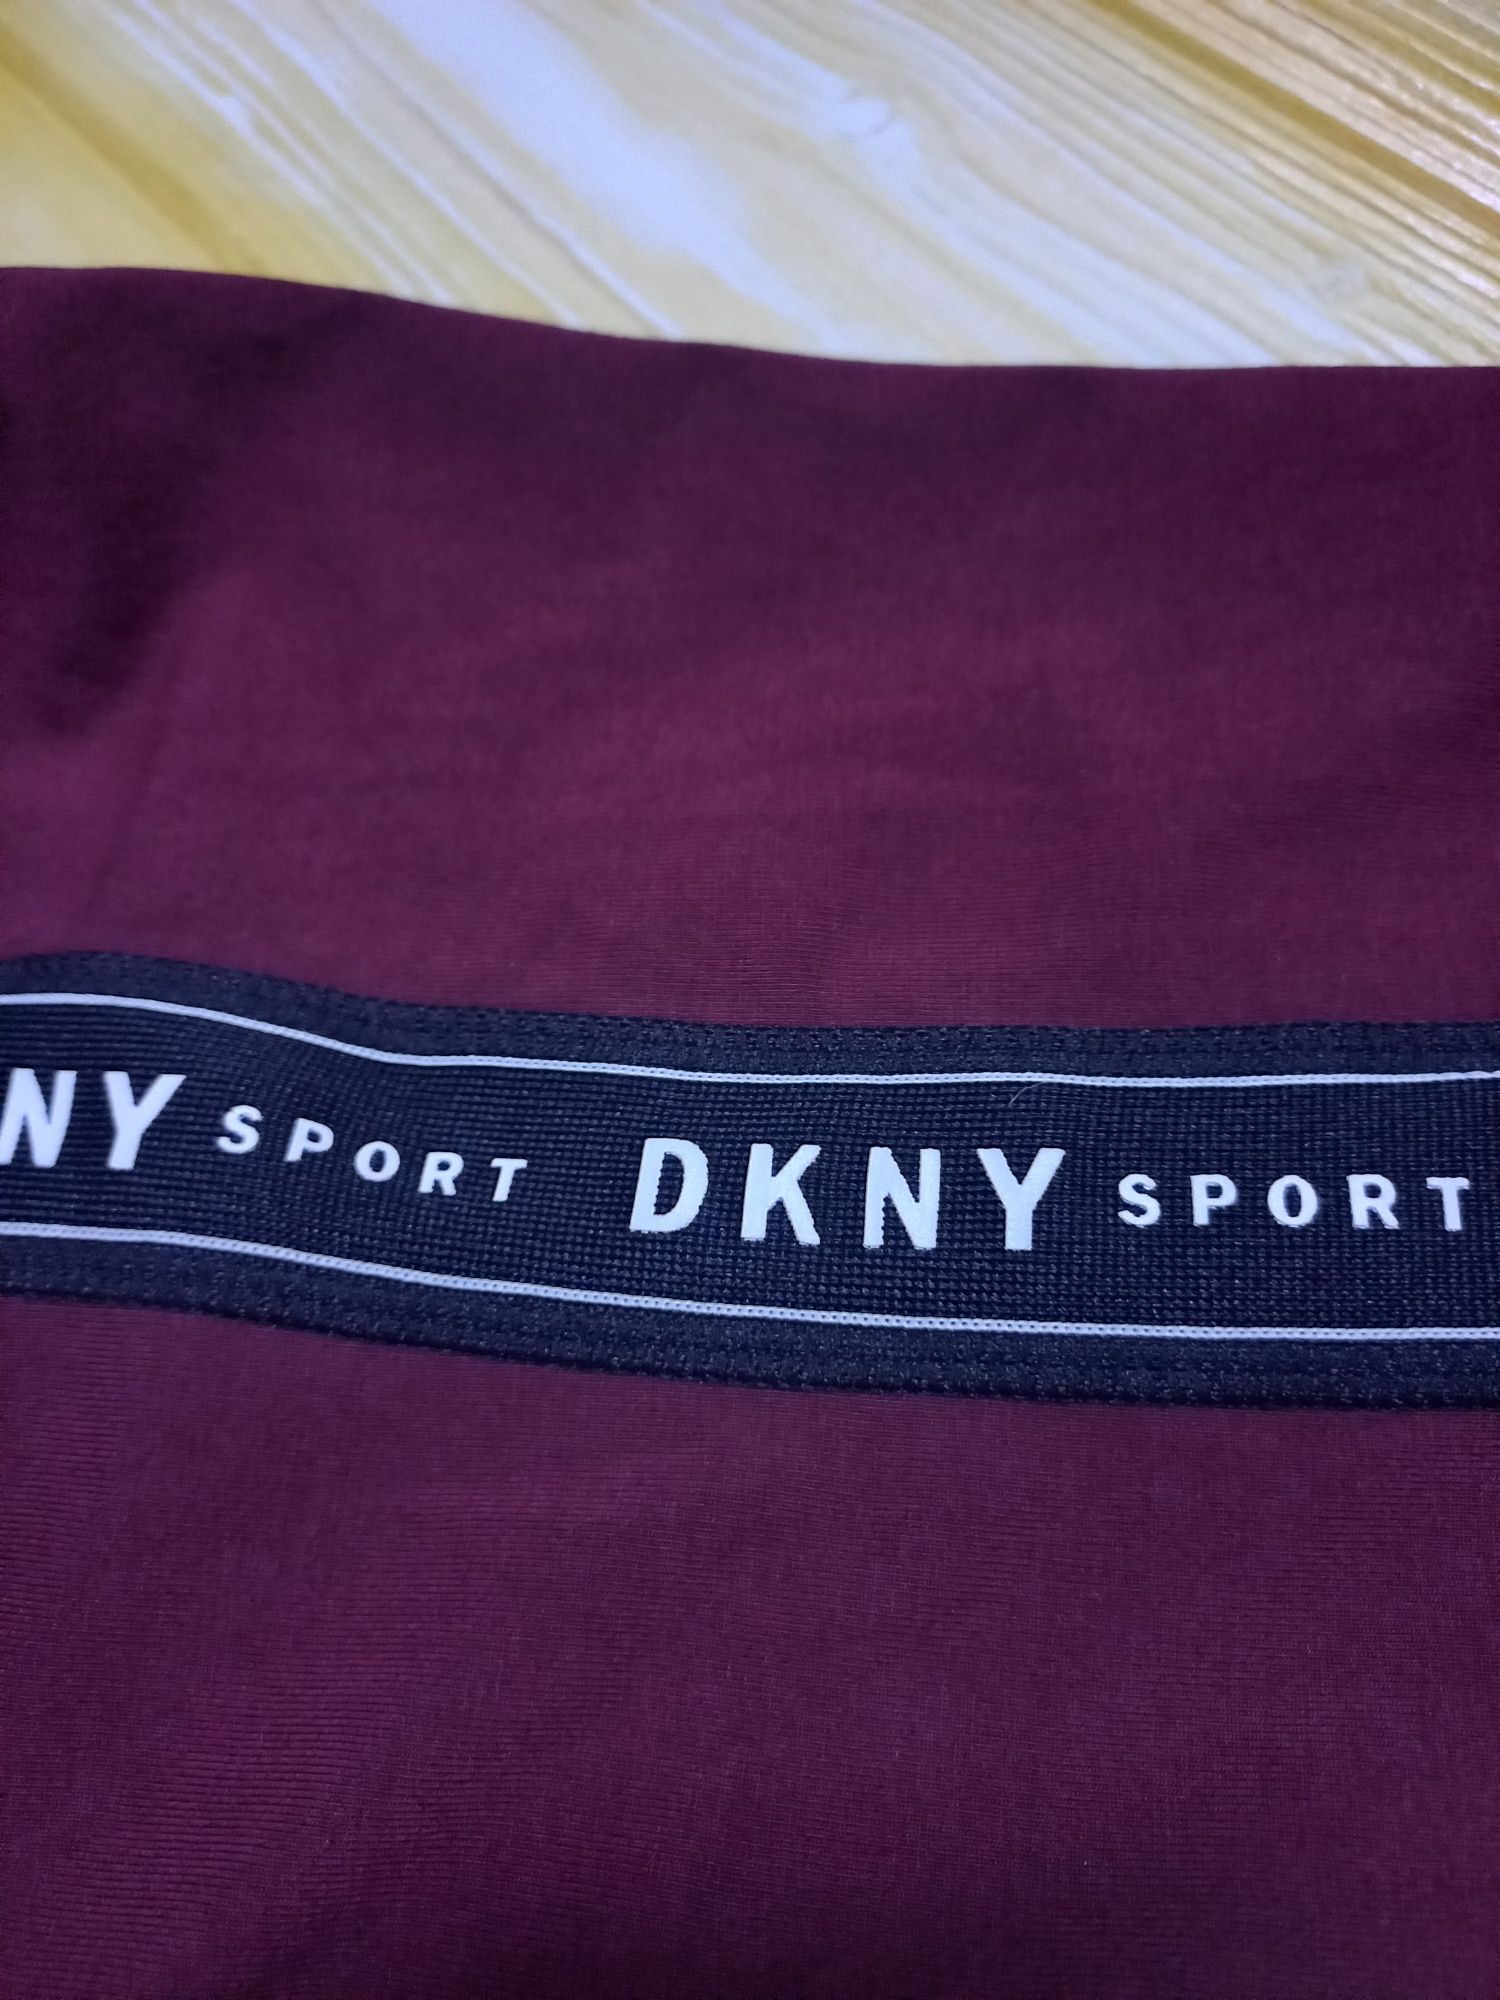 Леггинсы/лосины от американского бренда DKNY. Оригинал. Цена за 2шт